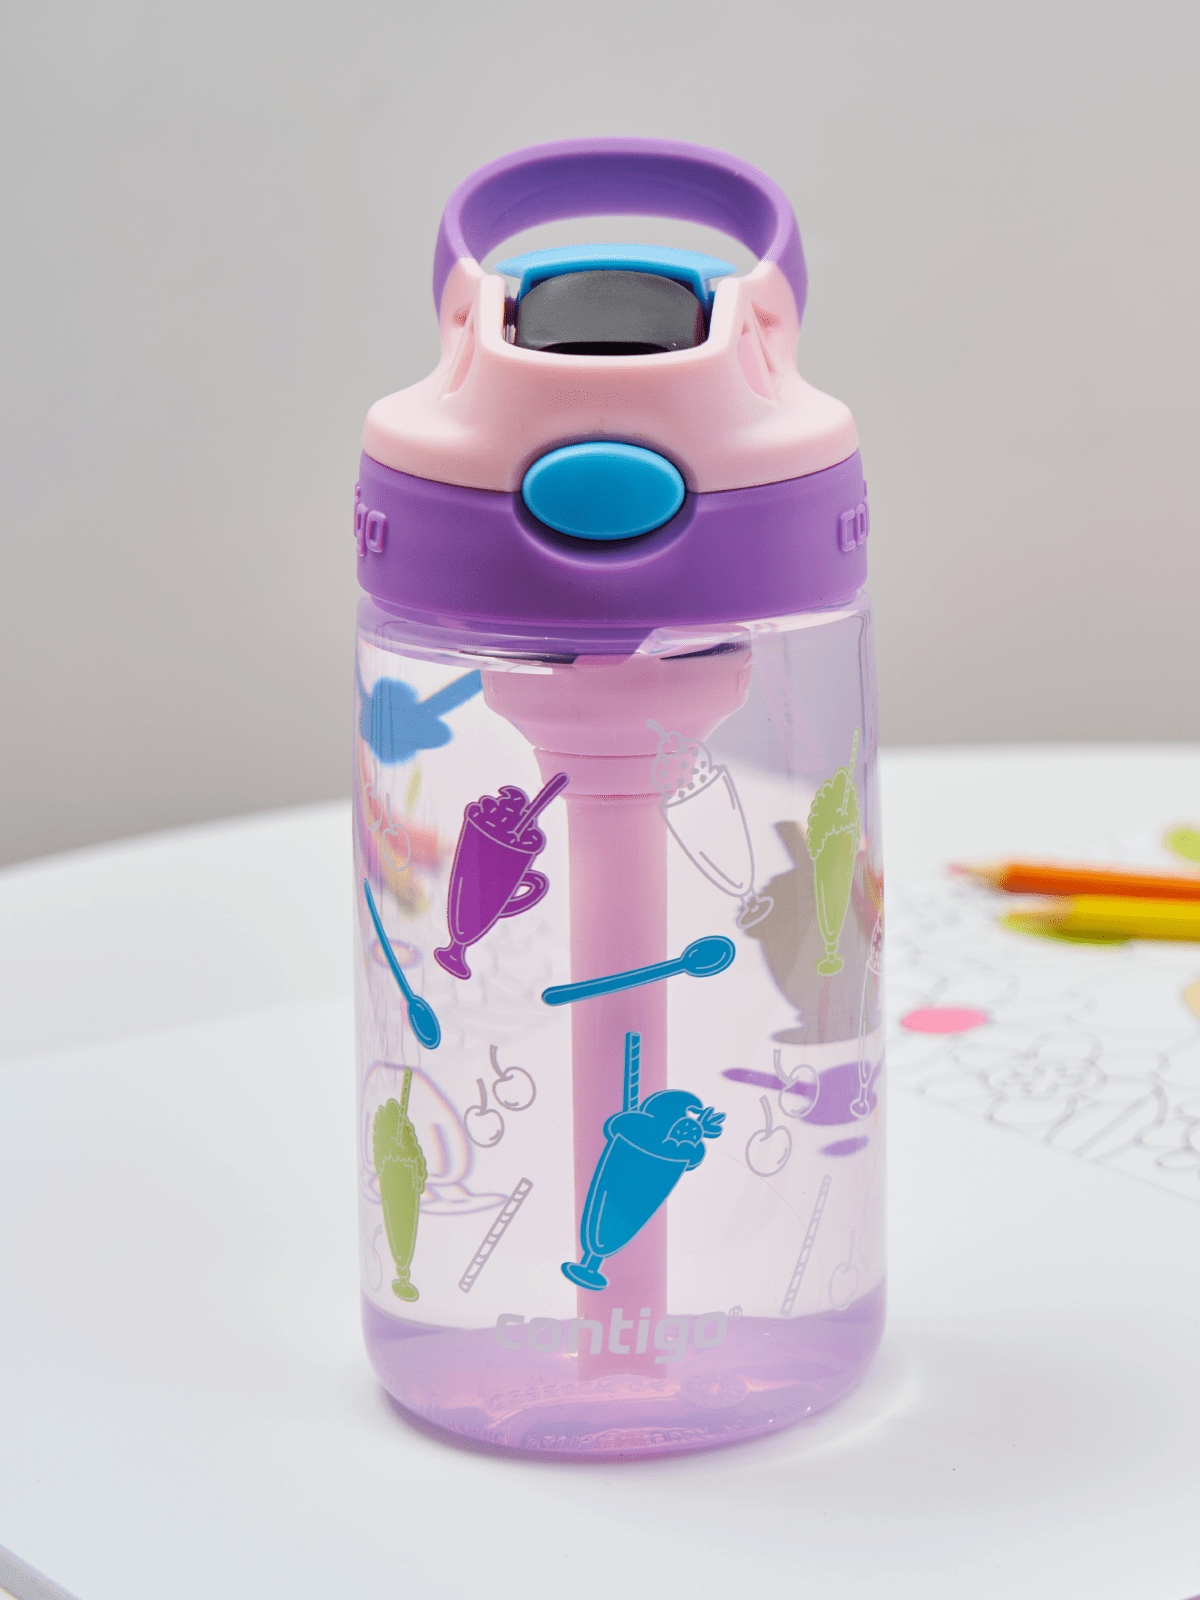 Water bottle / bottle for children Contigo Easy Clean 420ml Strawberry  Shakes Pink, BRANDS \ CONTIGO \ FOR KIDS BRANDS \ CONTIGO \ BIDONS